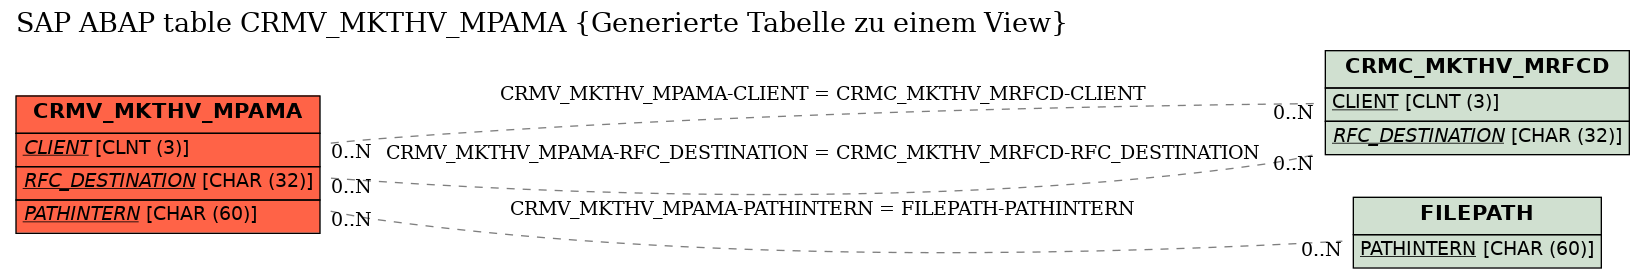 E-R Diagram for table CRMV_MKTHV_MPAMA (Generierte Tabelle zu einem View)